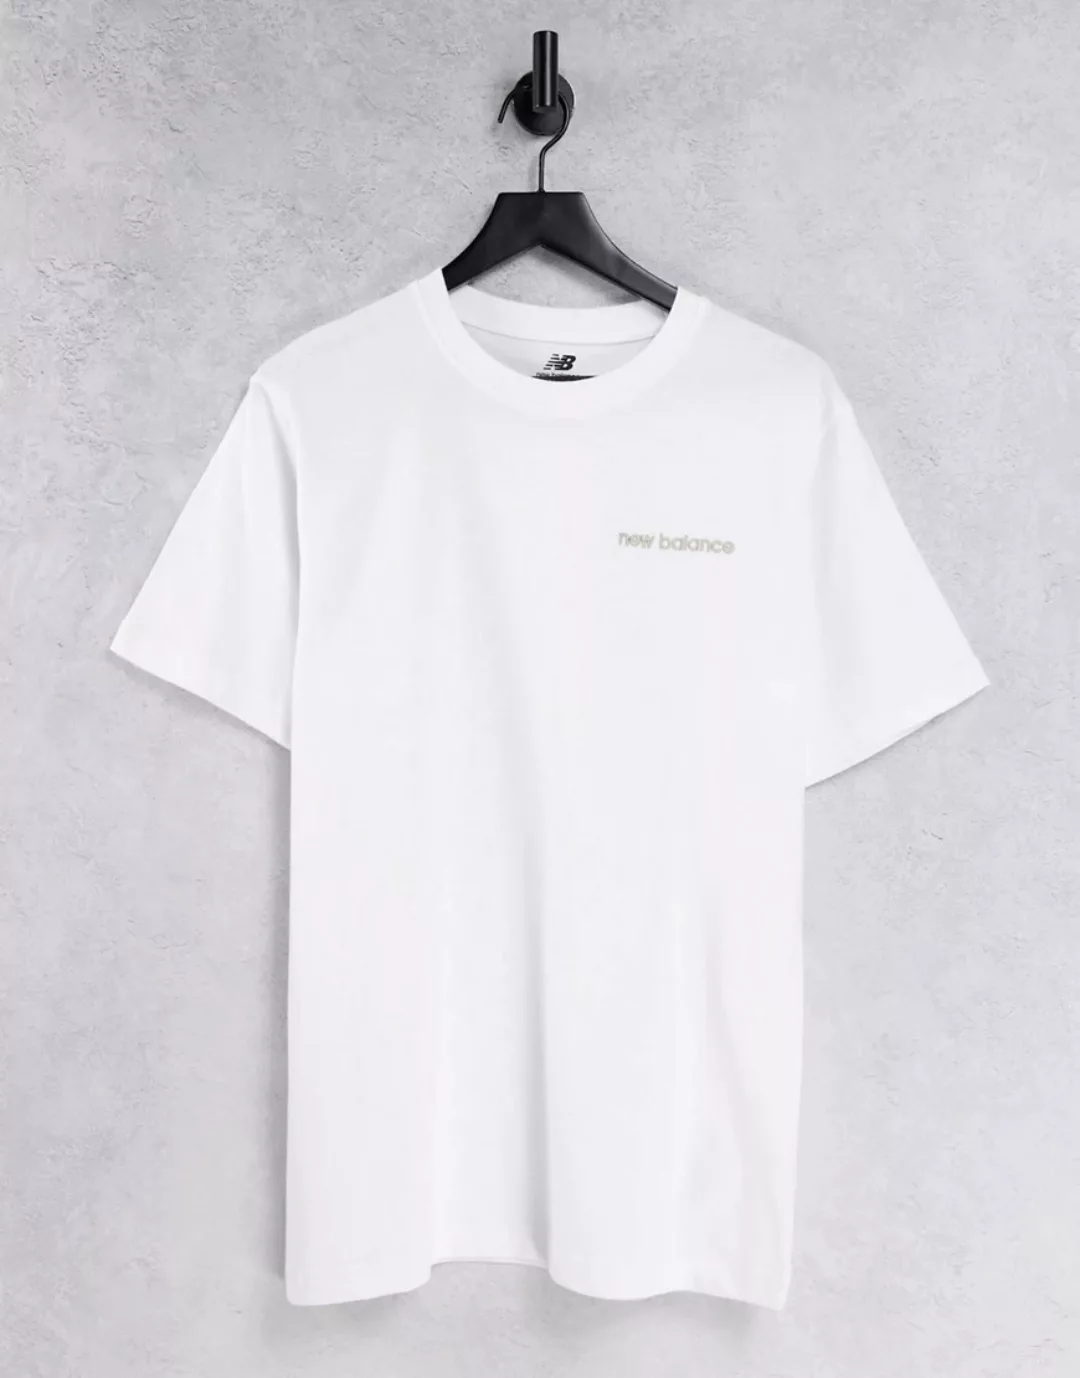 New Balance – T-Shirt in Weiß mit linearem Logo, exklusiv bei ASOS günstig online kaufen